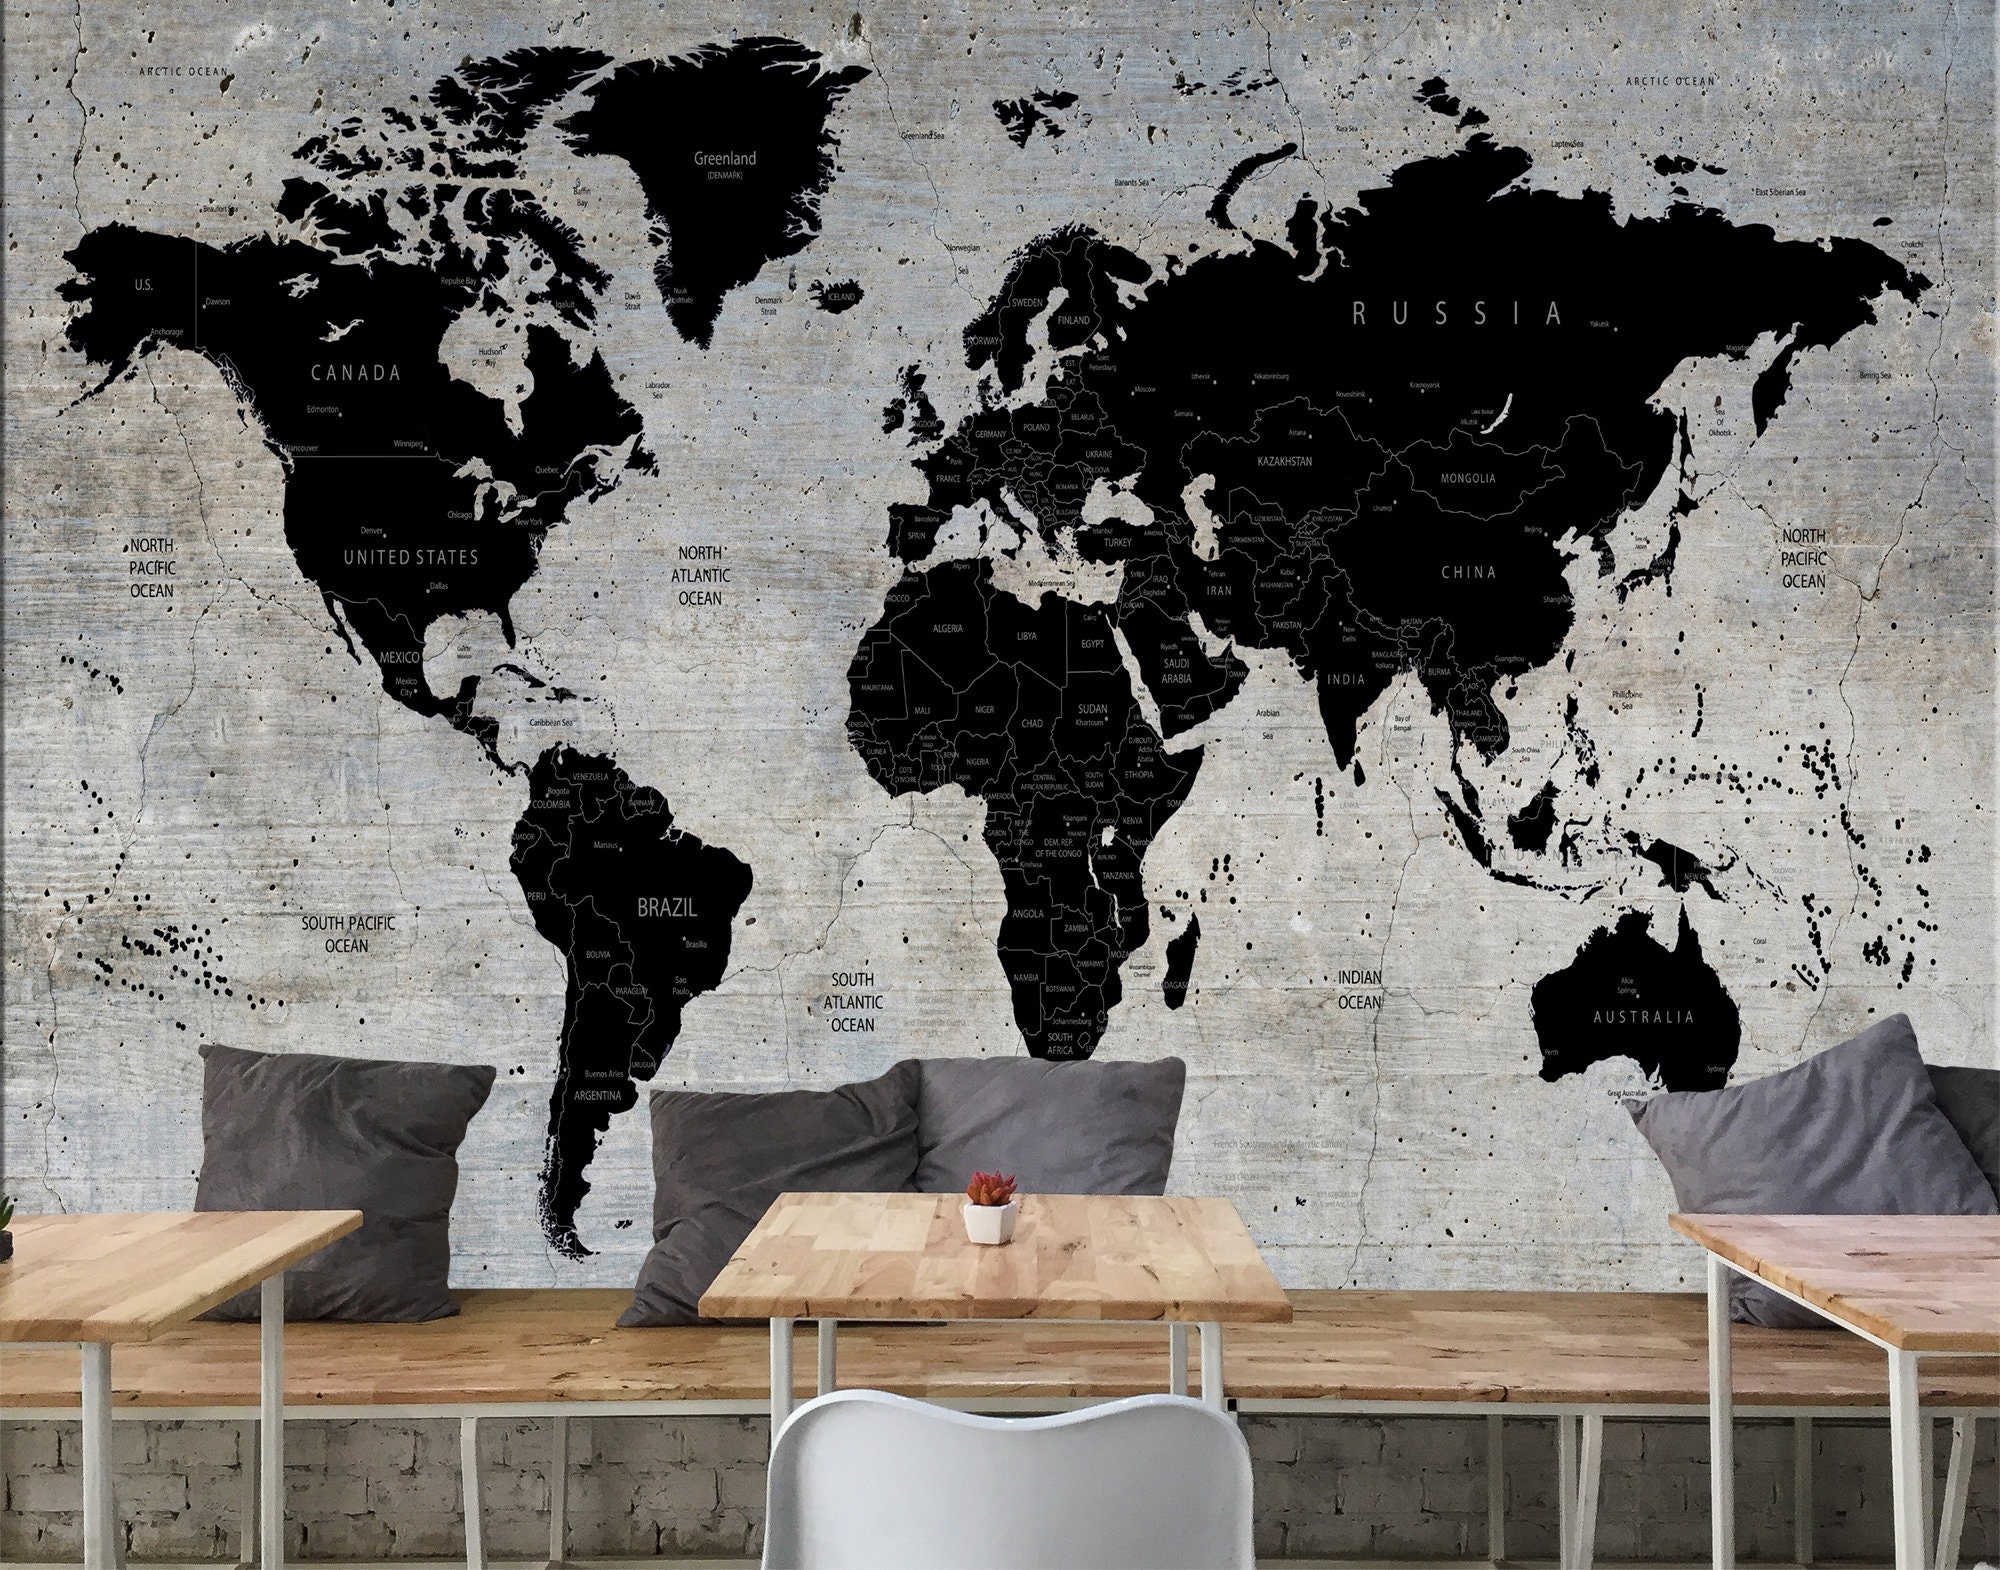 Wallpaper on Concrete Wall / Wereldkaart Behang Op -